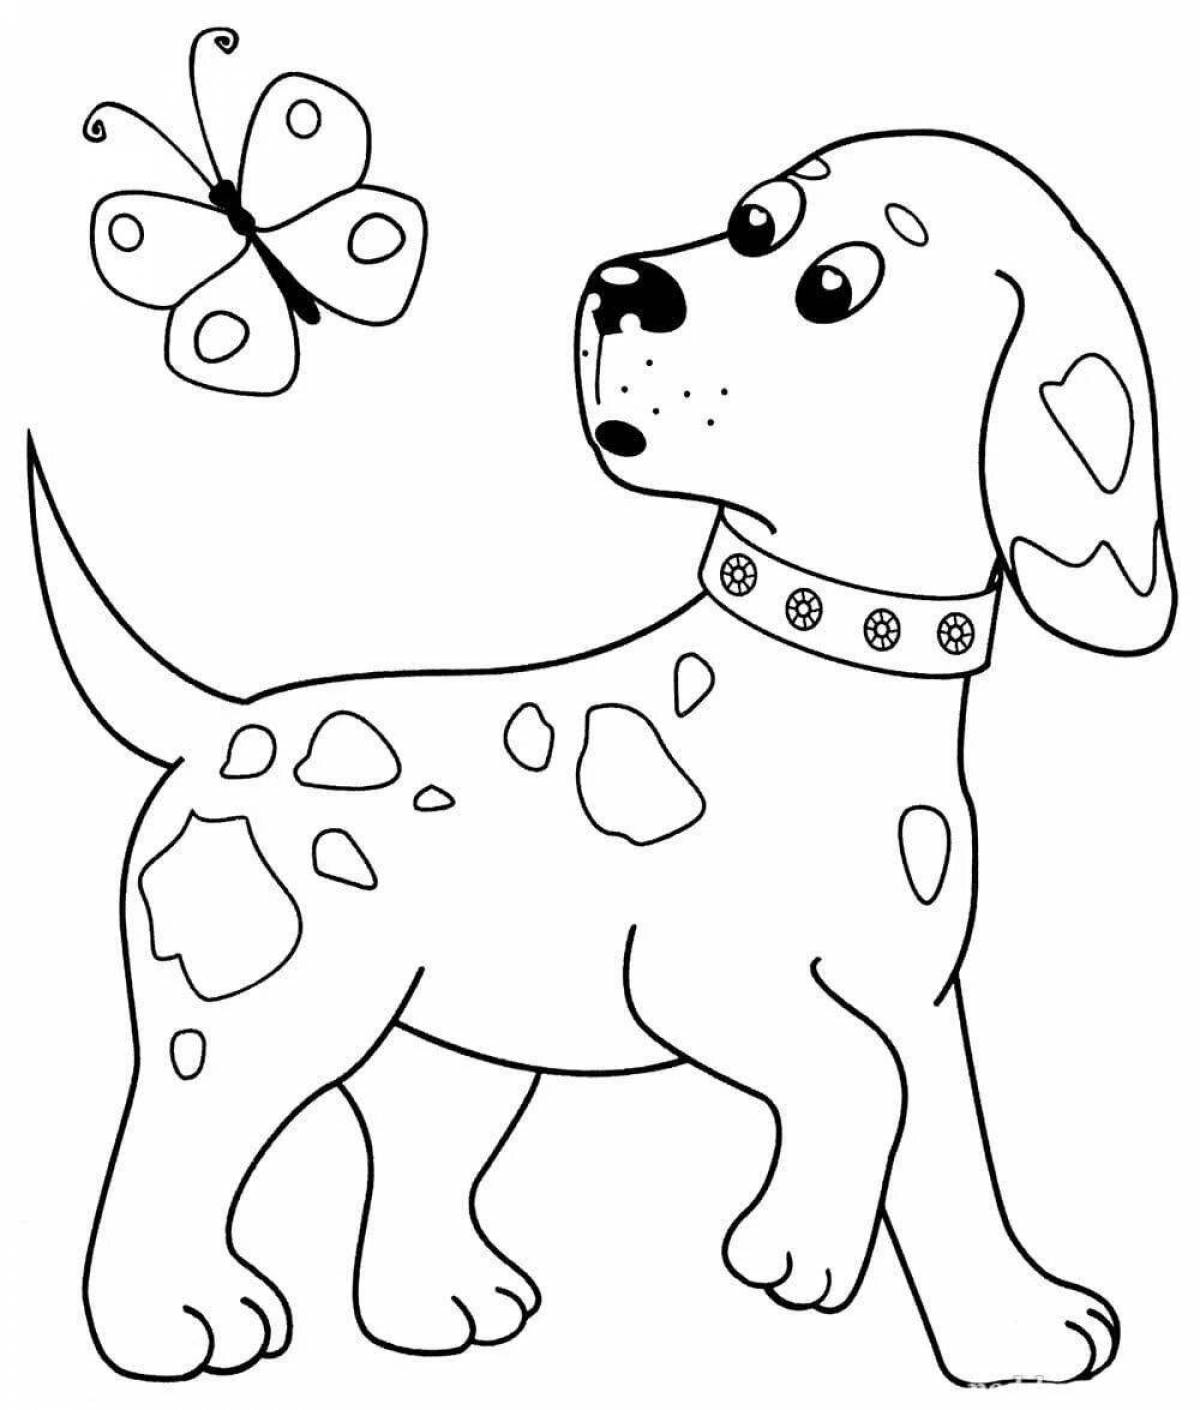 Раскраски Антистресс Собака | Скачать и распечатать